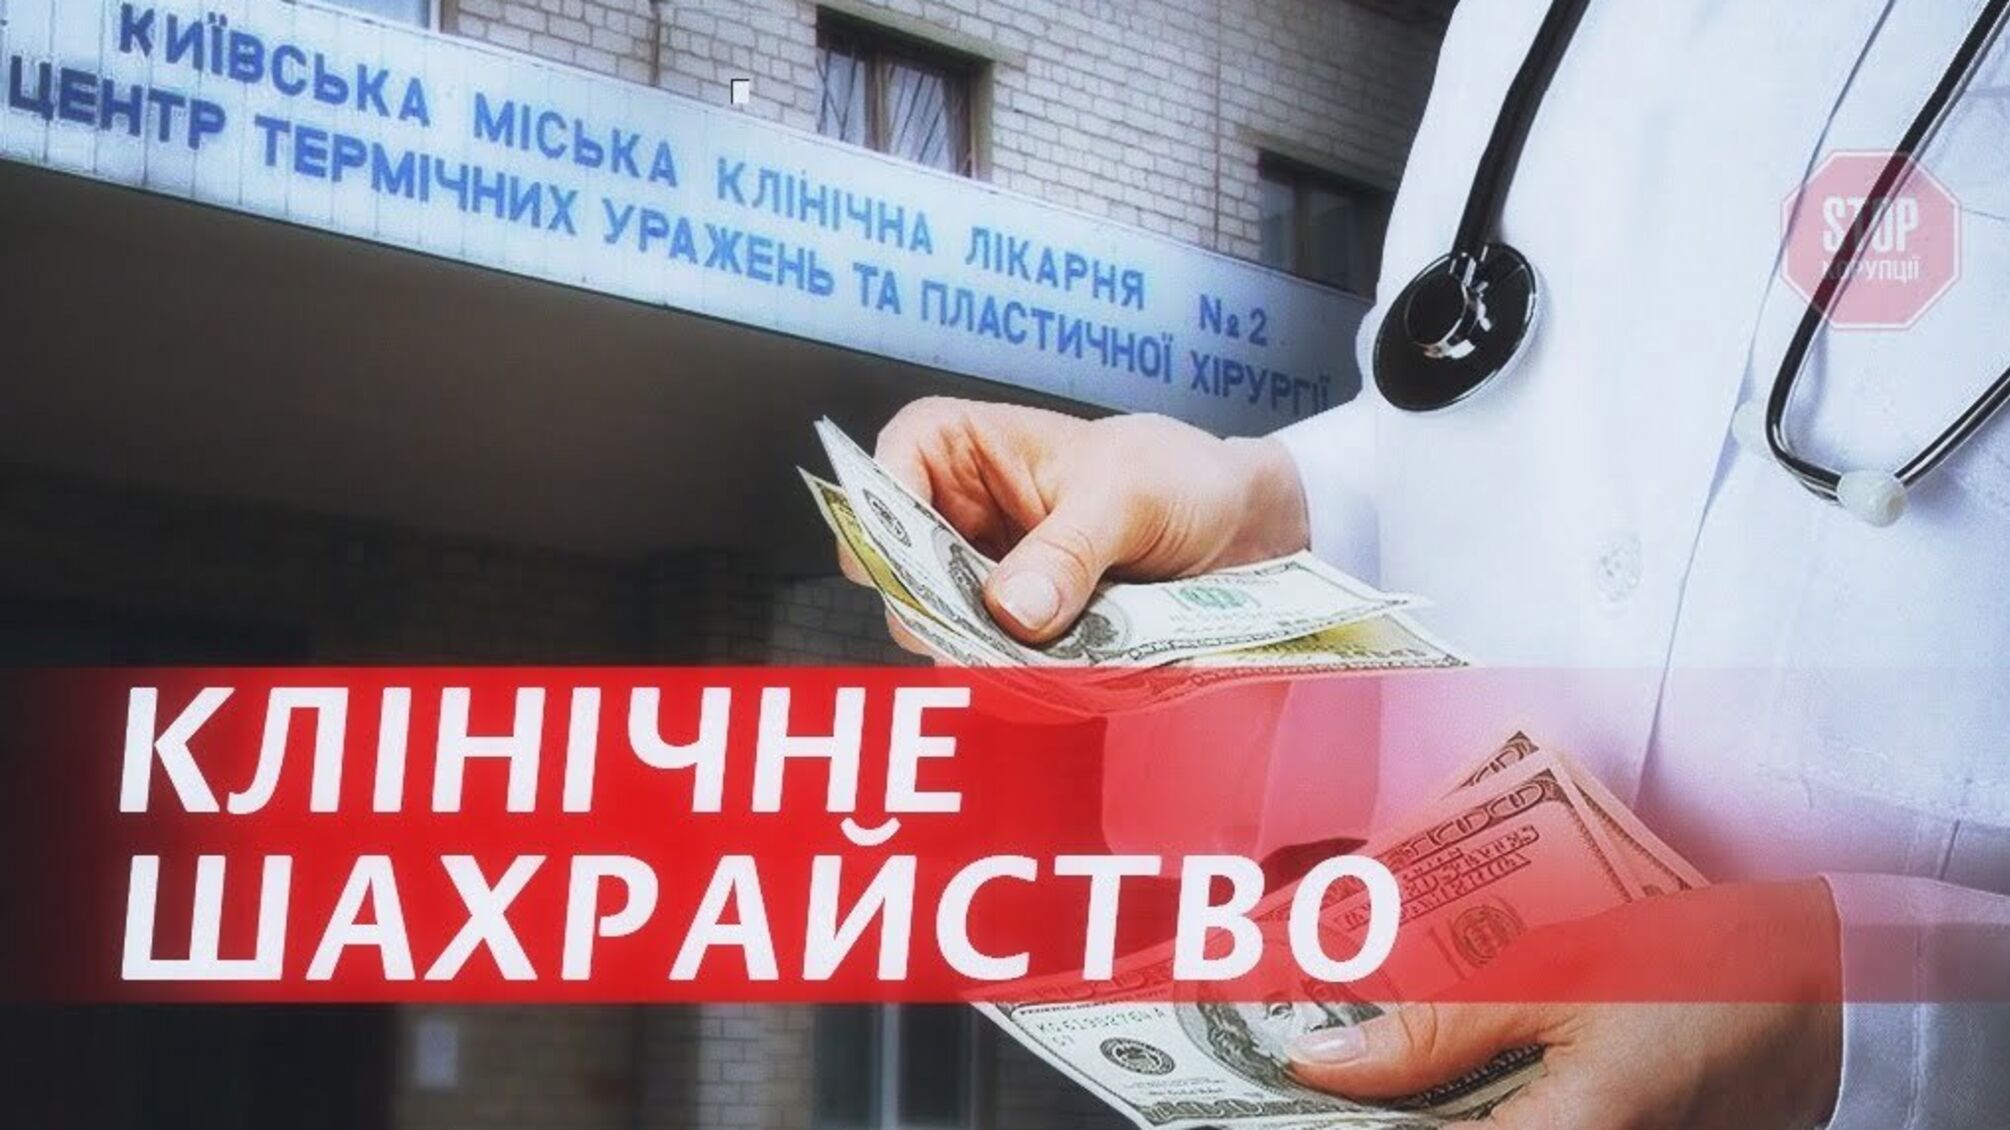 Клінічне шахрайство: як київська міська лікарня підіграє на тендерах улюбленому постачальнику